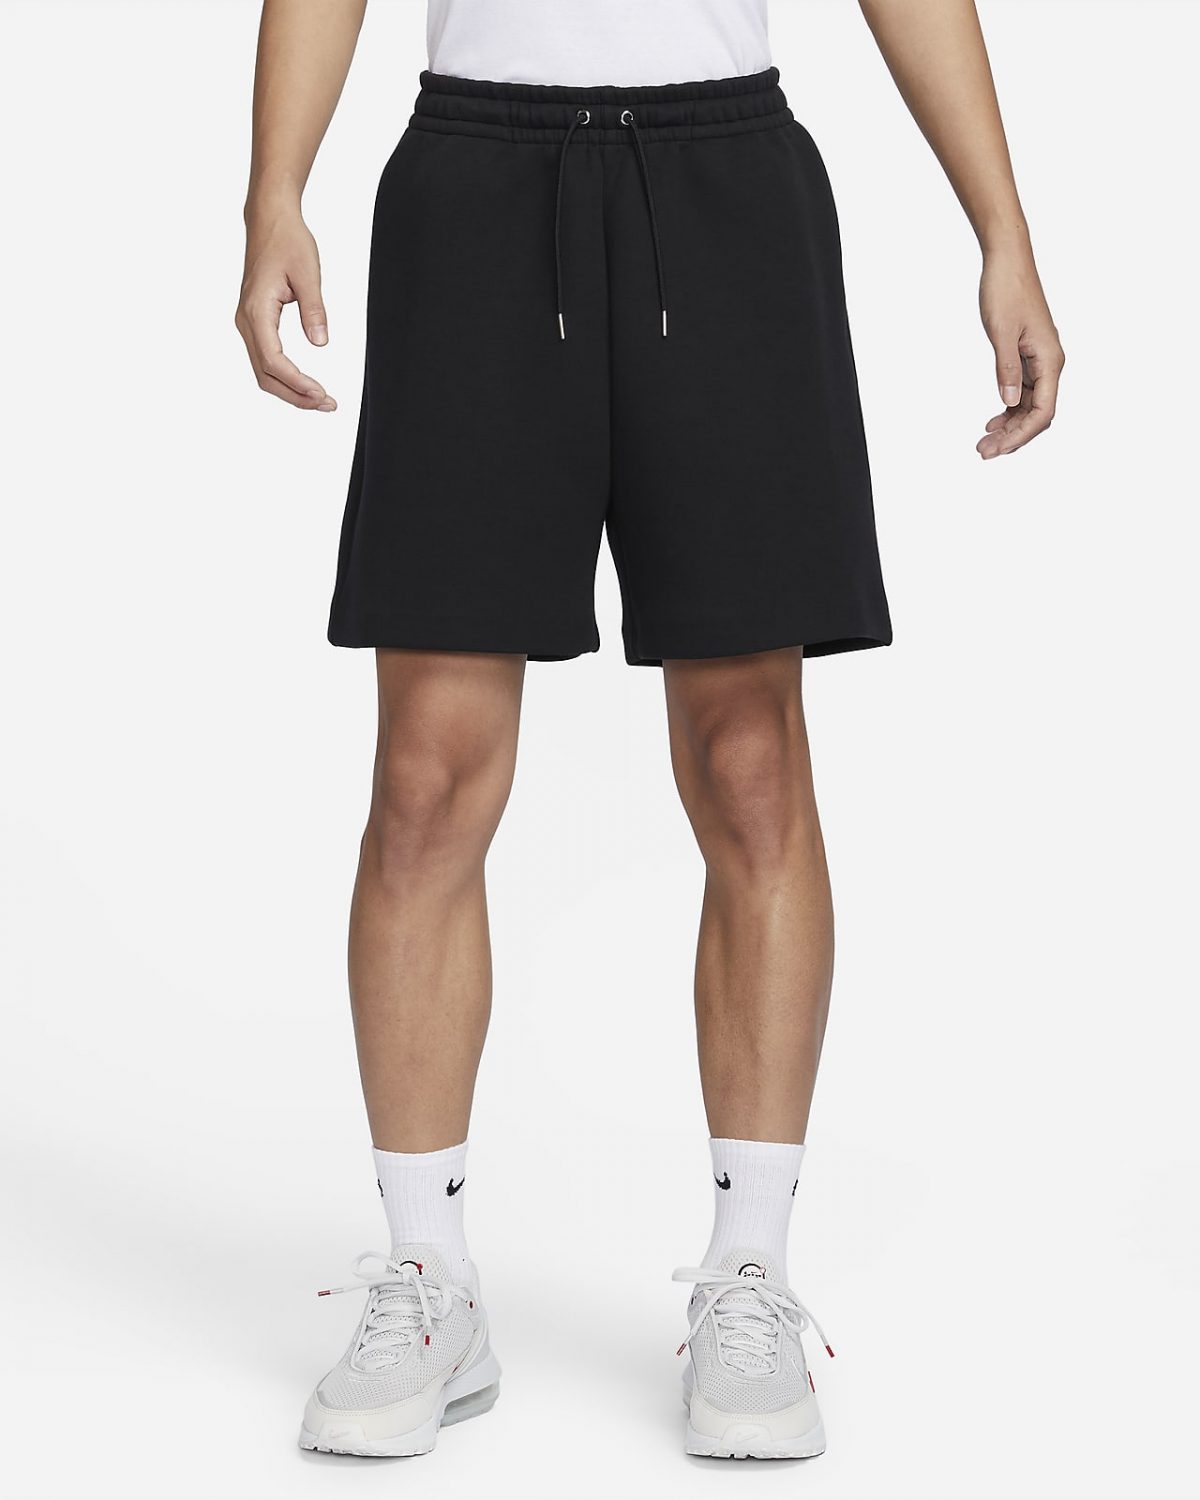 Мужские шорты Nike Sportswear Tech Fleece Reimagined фото